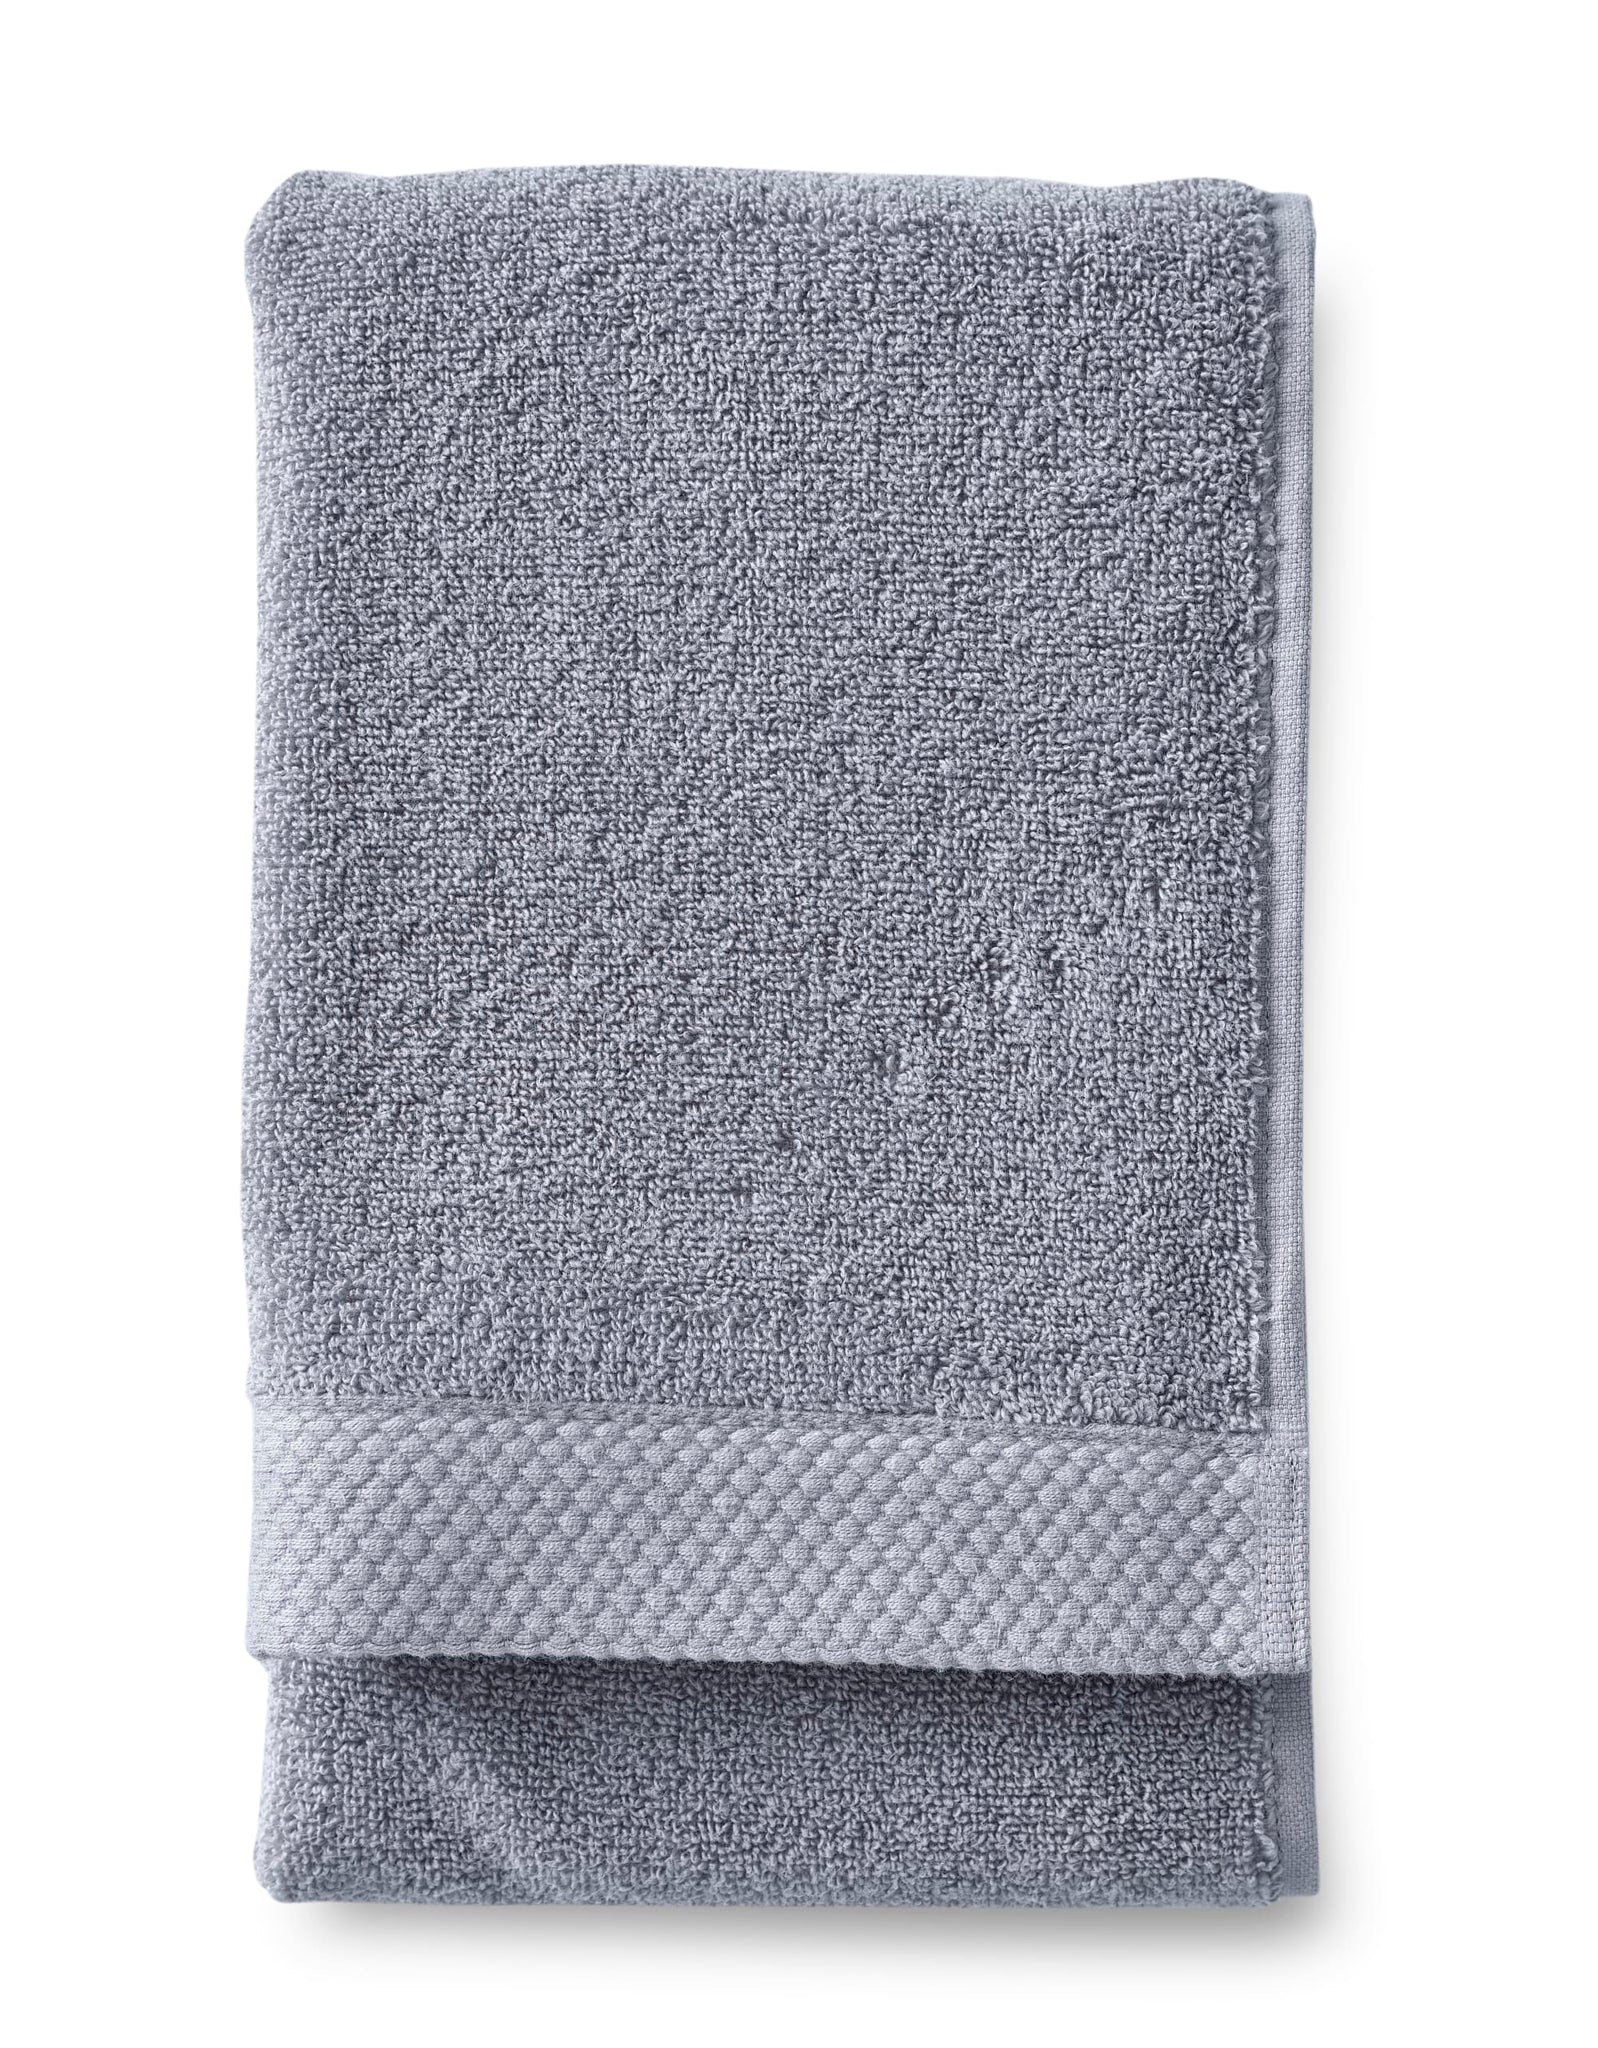 Hali towel GOTS